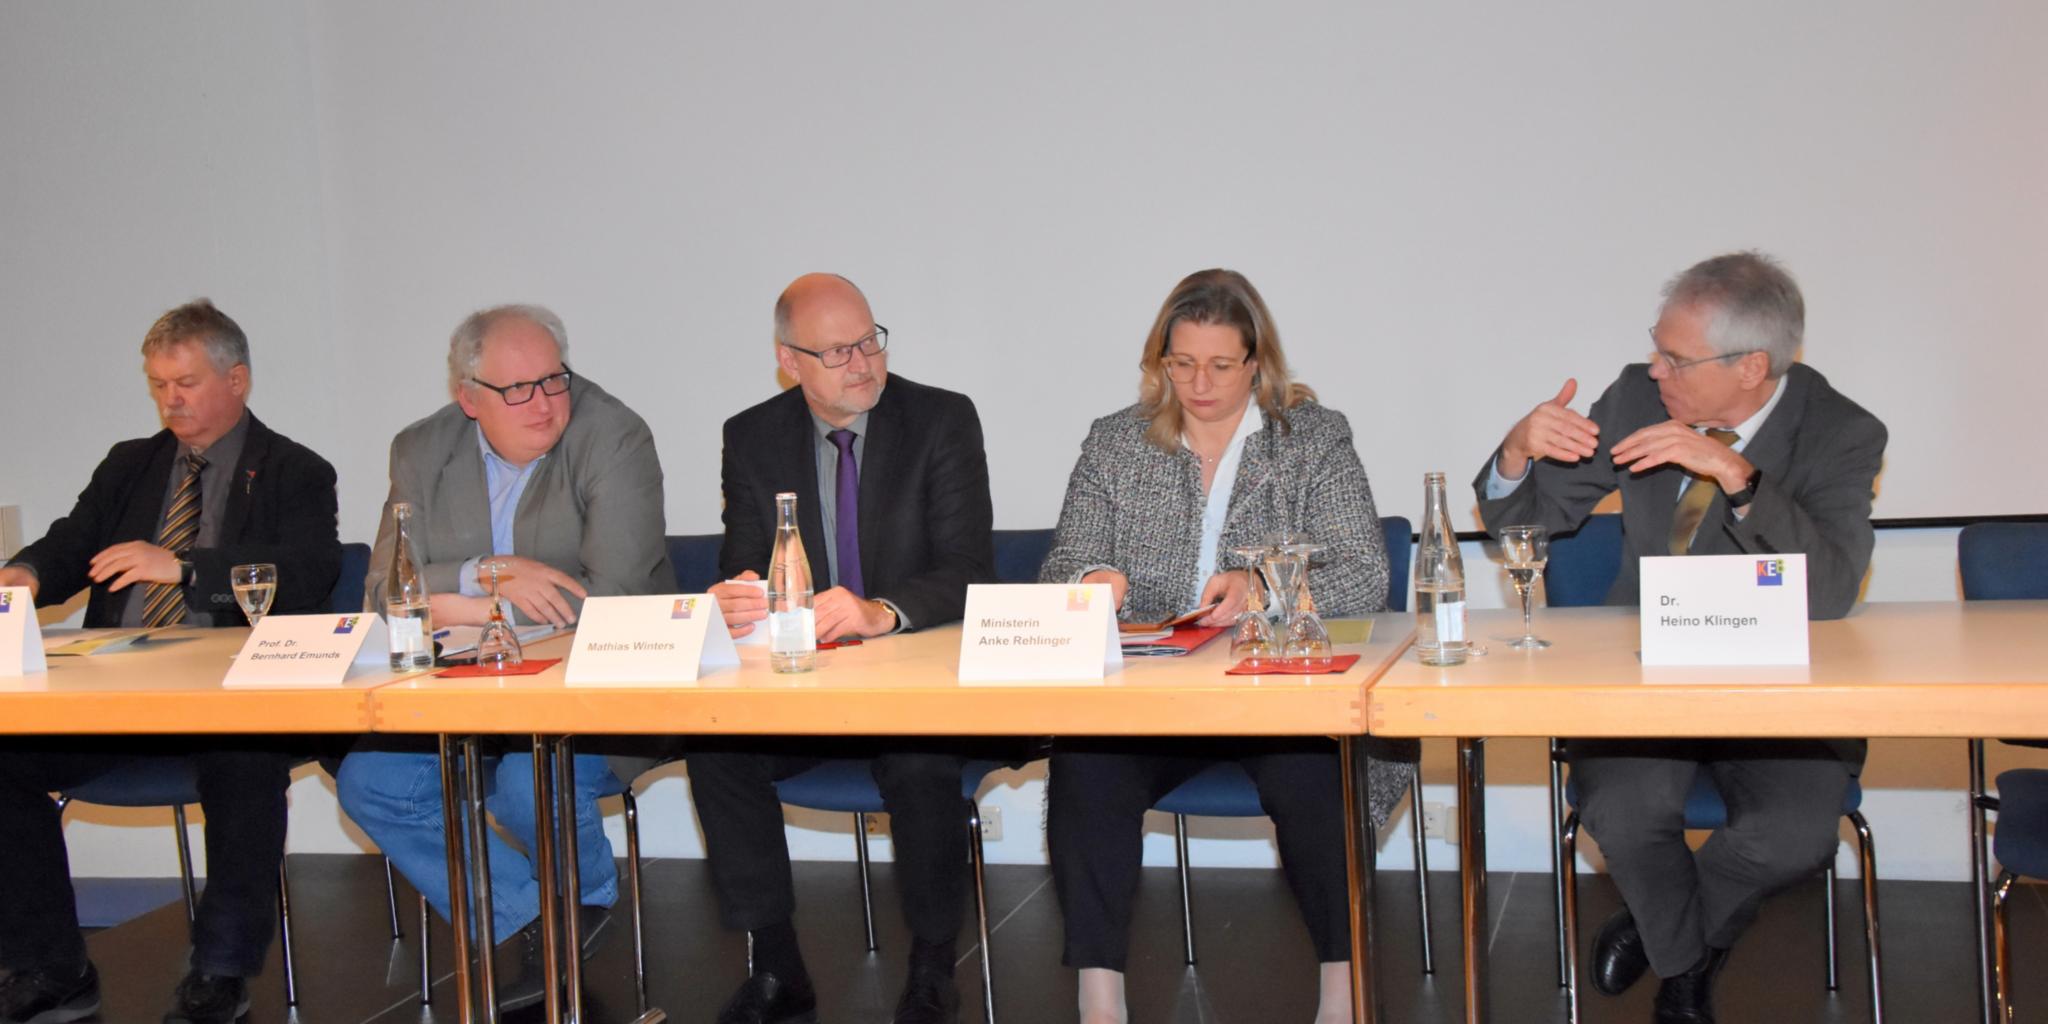 Im Podium diskutierten (von links): Eugen Roth, Prof. Dr. Bernhard Emunds, Mathias Winters, Anke Rehlinger und Dr. Heino Klingen